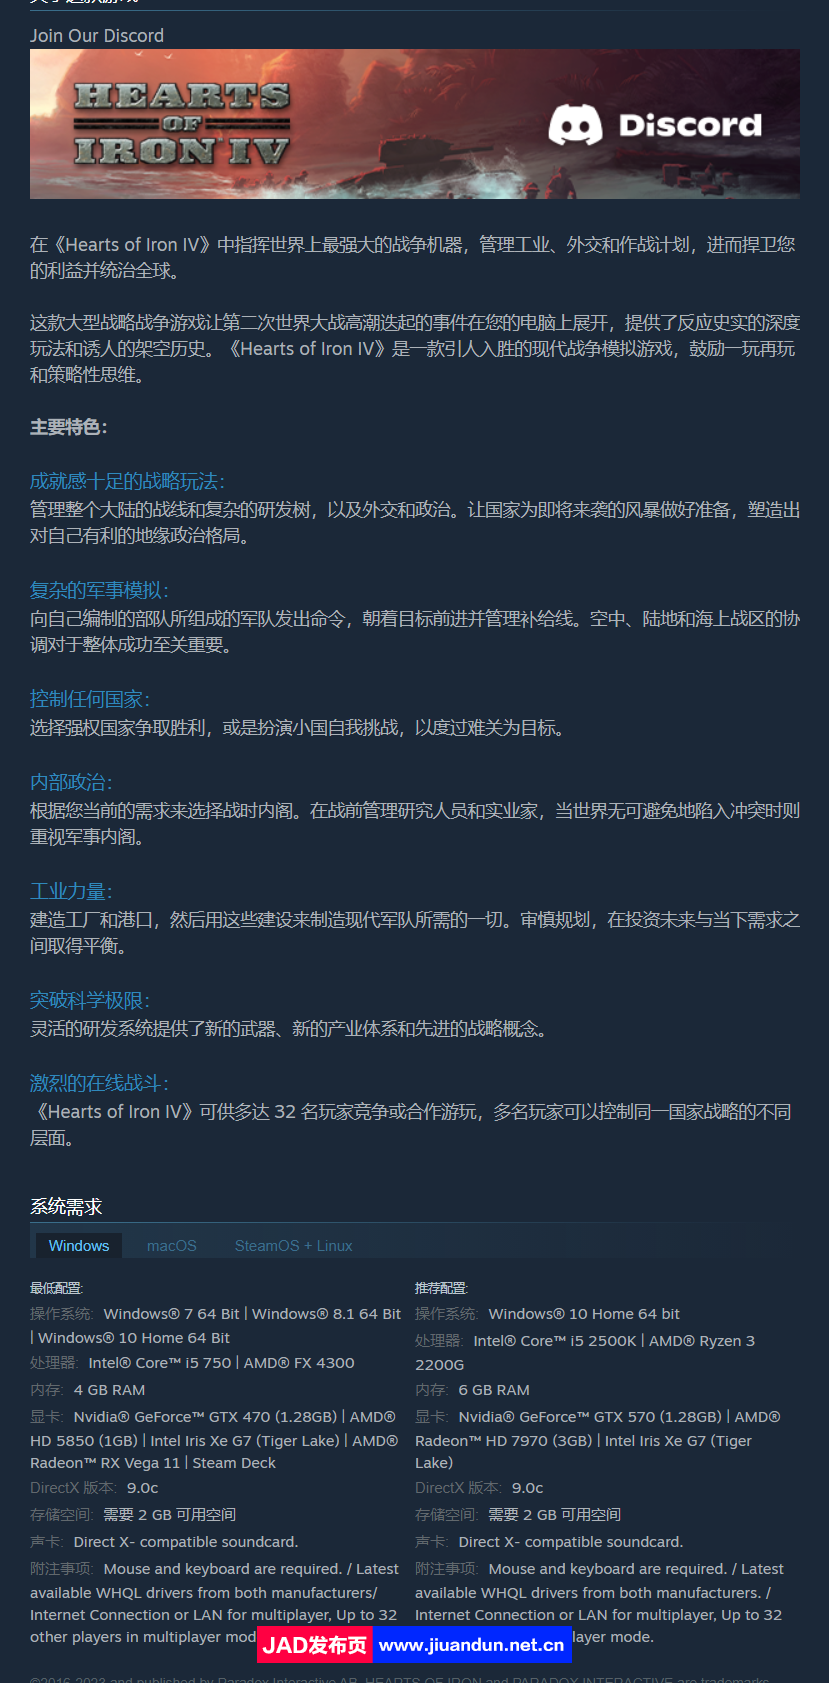 《钢铁雄心IV》免安装-豪华终极版-V1.12.14.50e7-中文语音-(官中+全DLC+集成MOD)-锁区绿色中文版[7.48 GB] 单机游戏 第7张